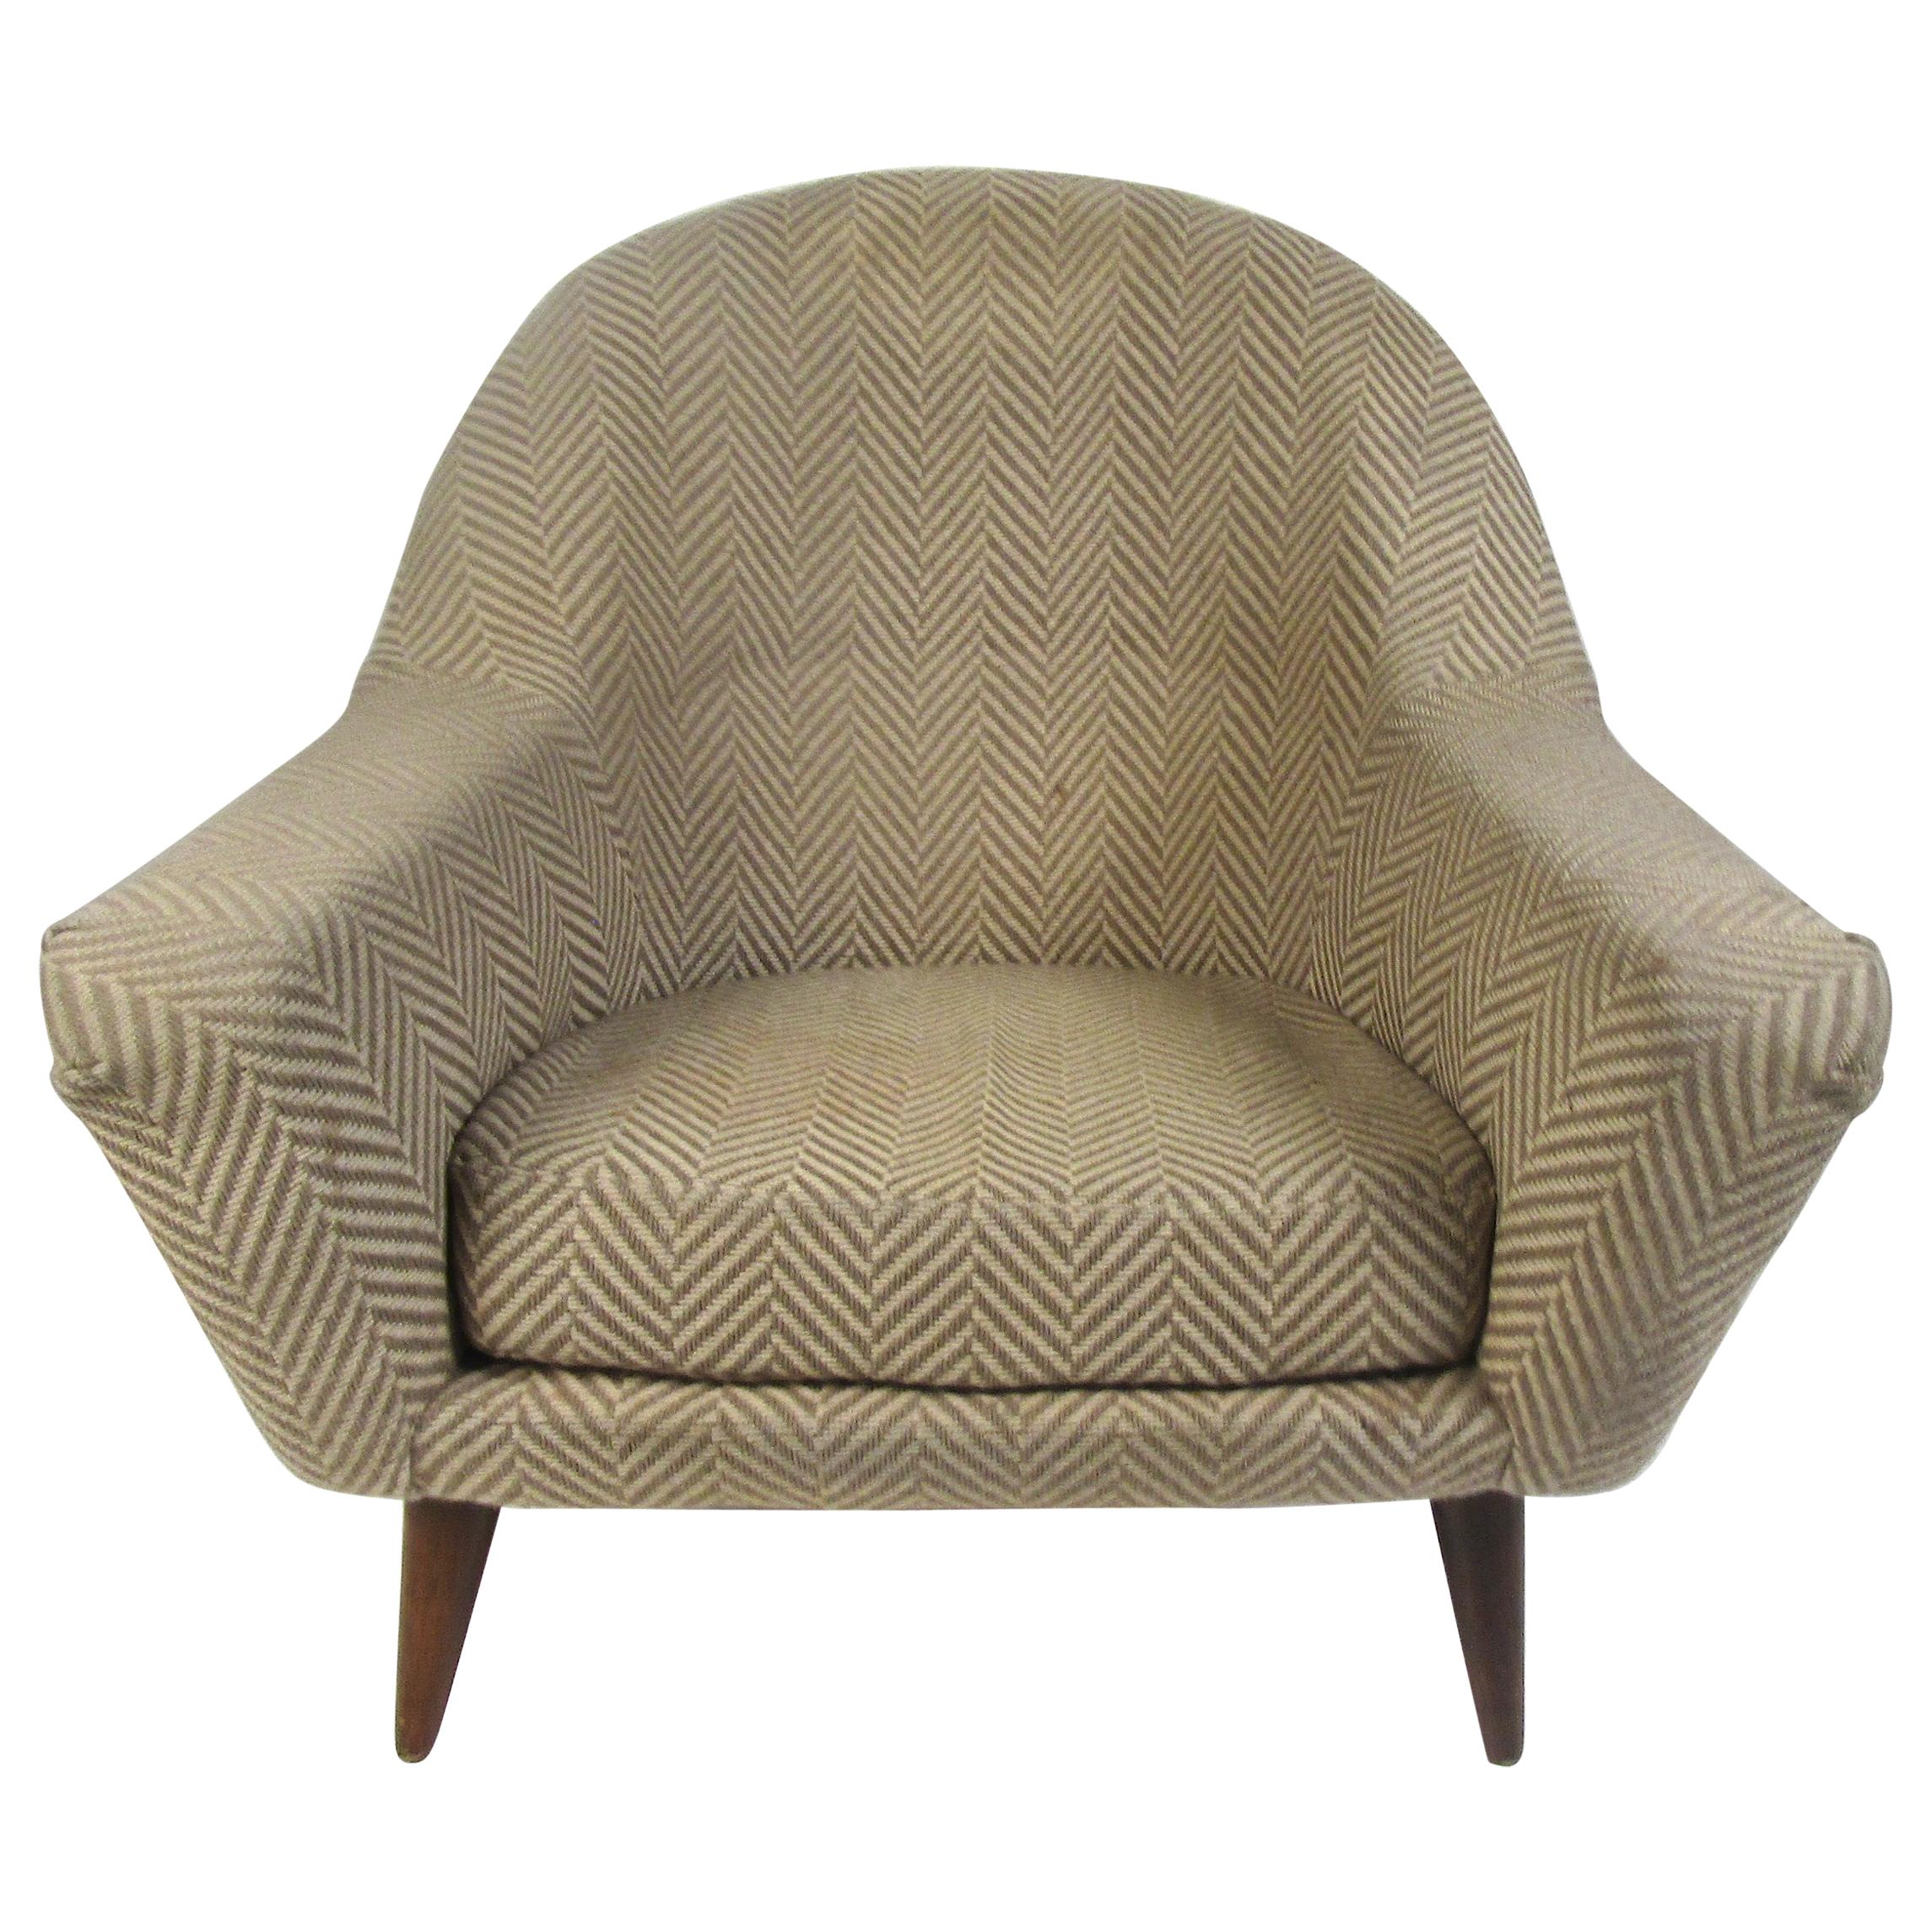 Stilvoller Sessel aus der Mitte des Jahrhunderts. Bezogen mit einer gemusterten Vintage-Polsterung. Abgespreizte und verjüngte Beine. Bitte bestätigen Sie den Standort des Artikels beim Händler (NJ oder NY).